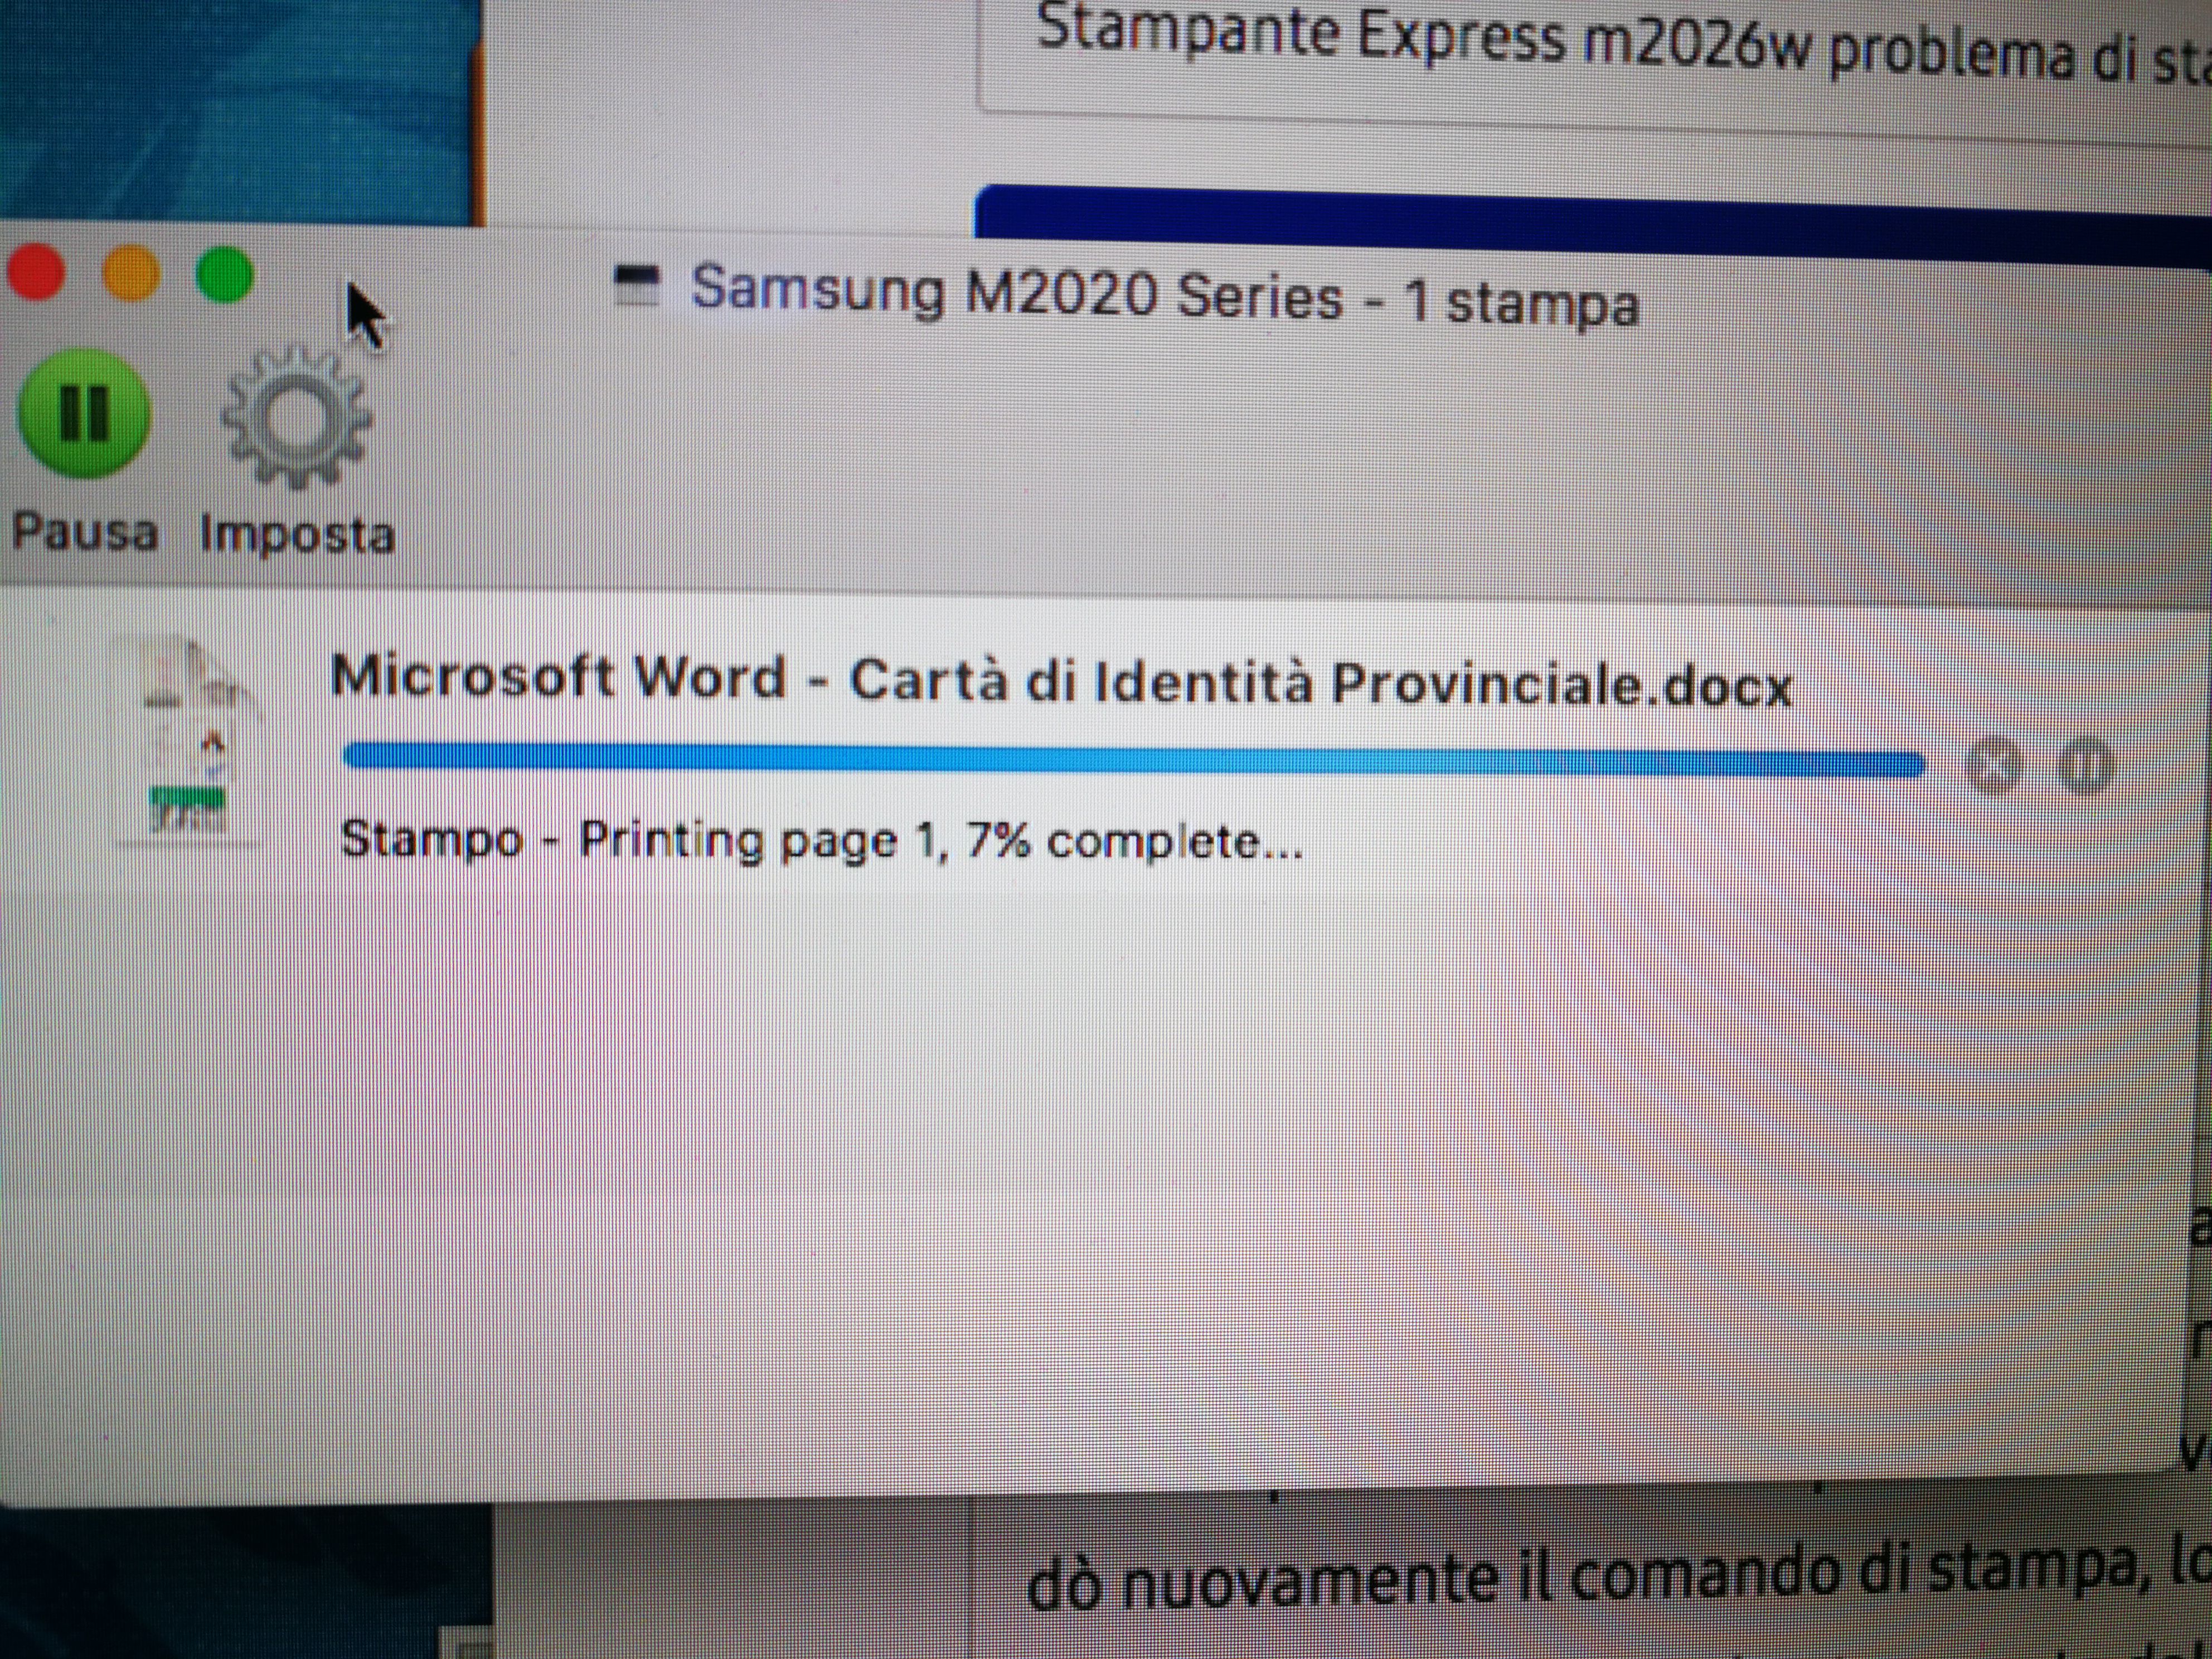 PROBLEMA DI STAMPA EXPRESS M2026W - Samsung Community